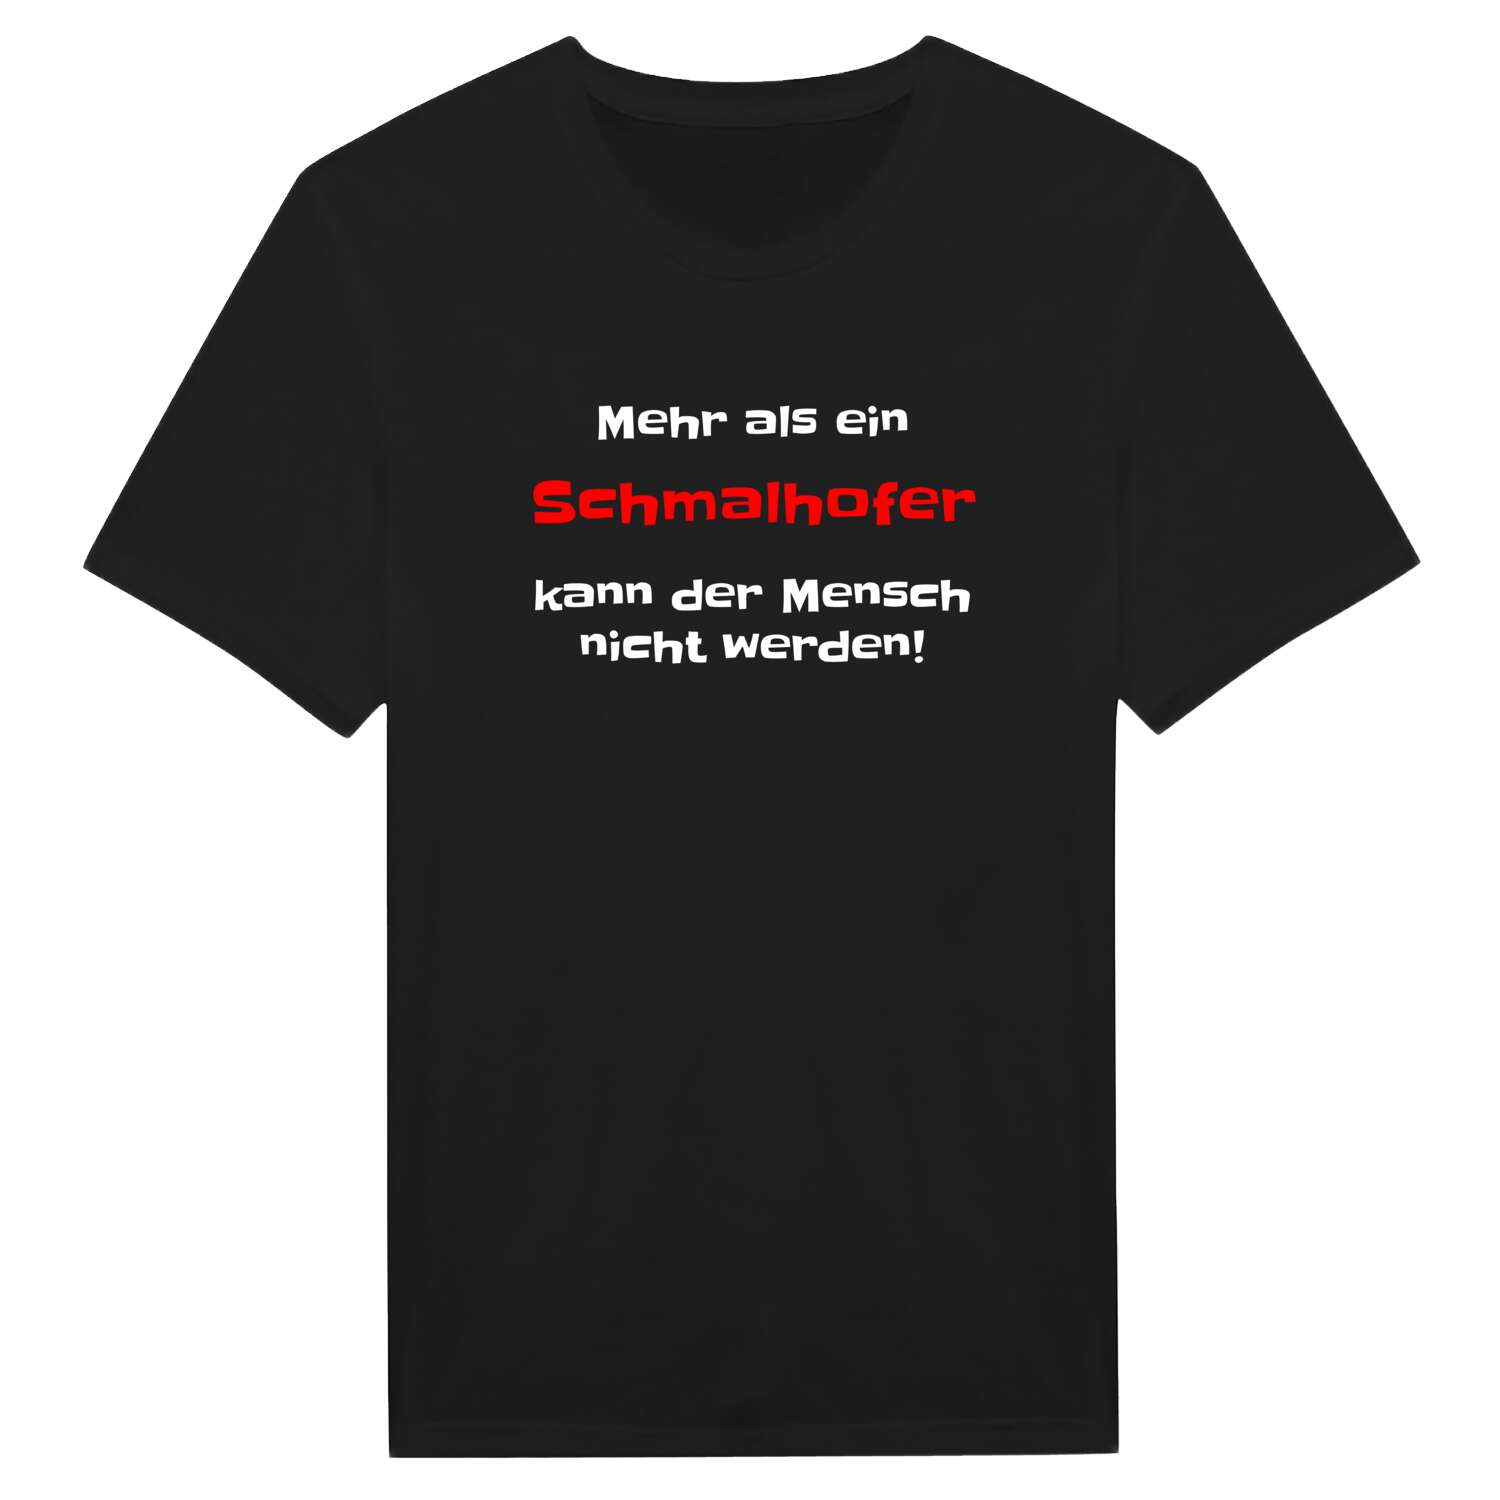 Schmalhof T-Shirt »Mehr als ein«